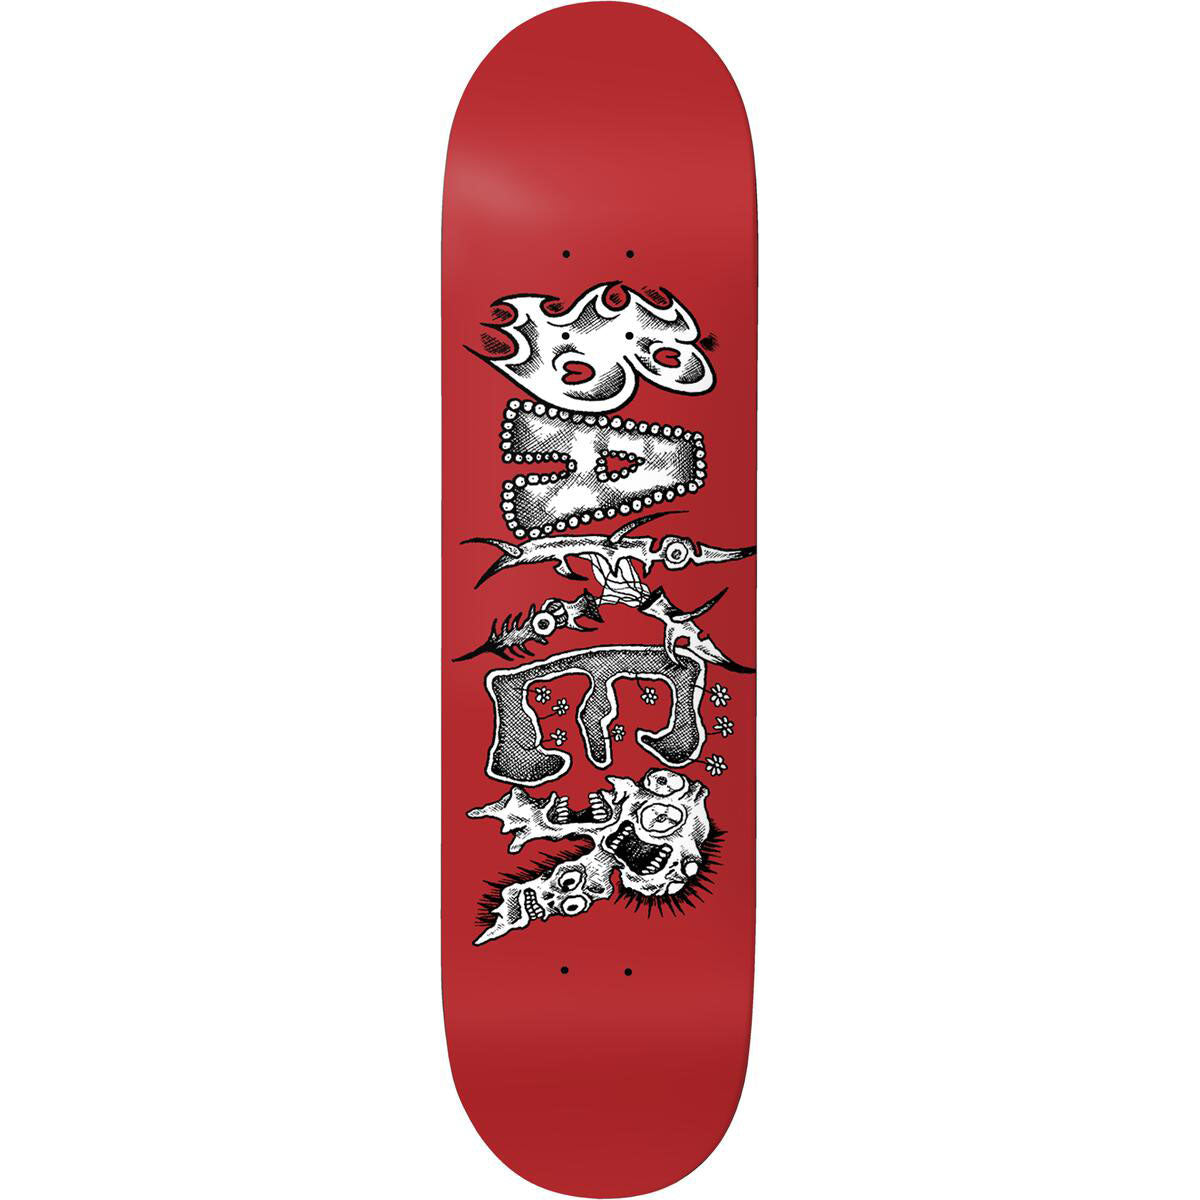 販促ワールド MAKE Skateboards/City Cruiser 8.625x29.0 casarecomeco